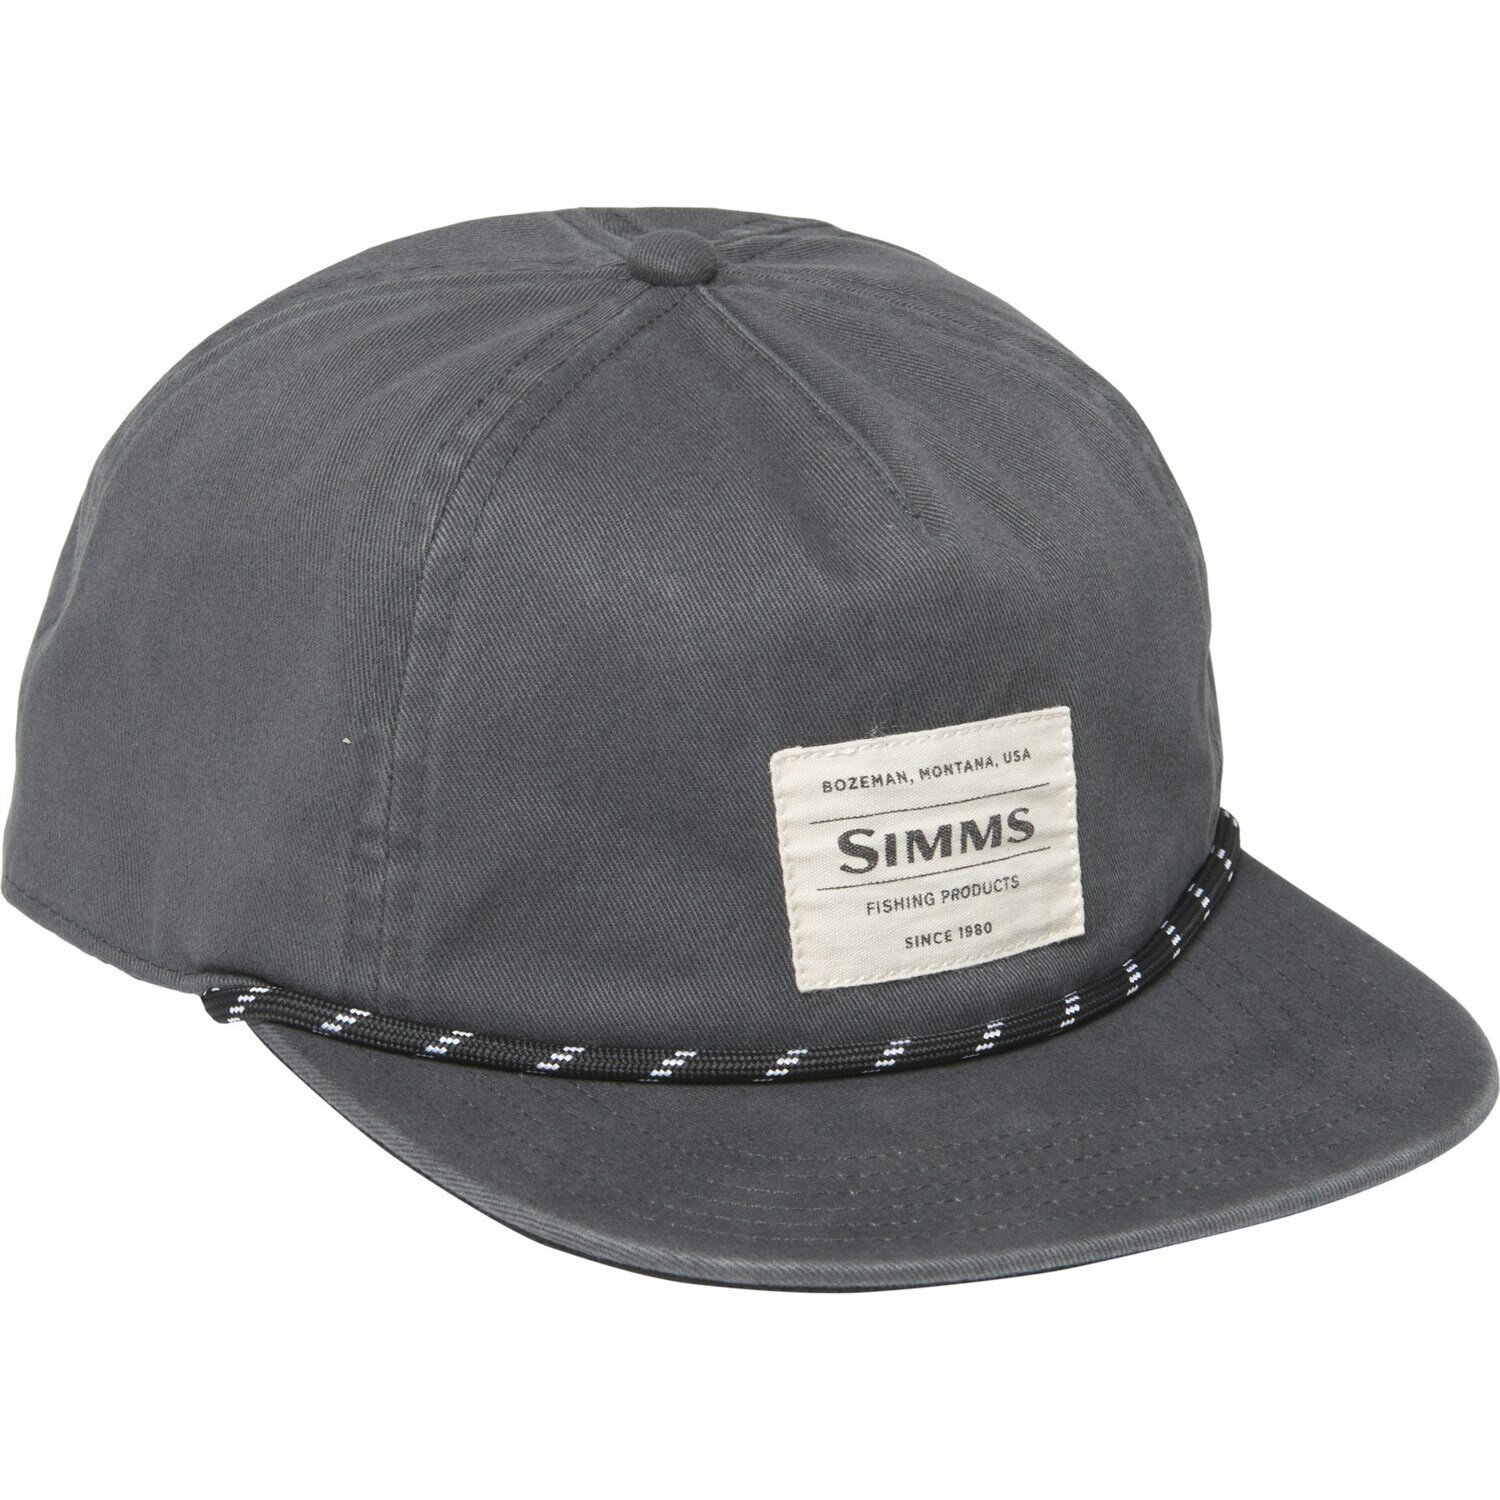 安いSimms 帽子の通販商品を比較  ショッピング情報のオークファン